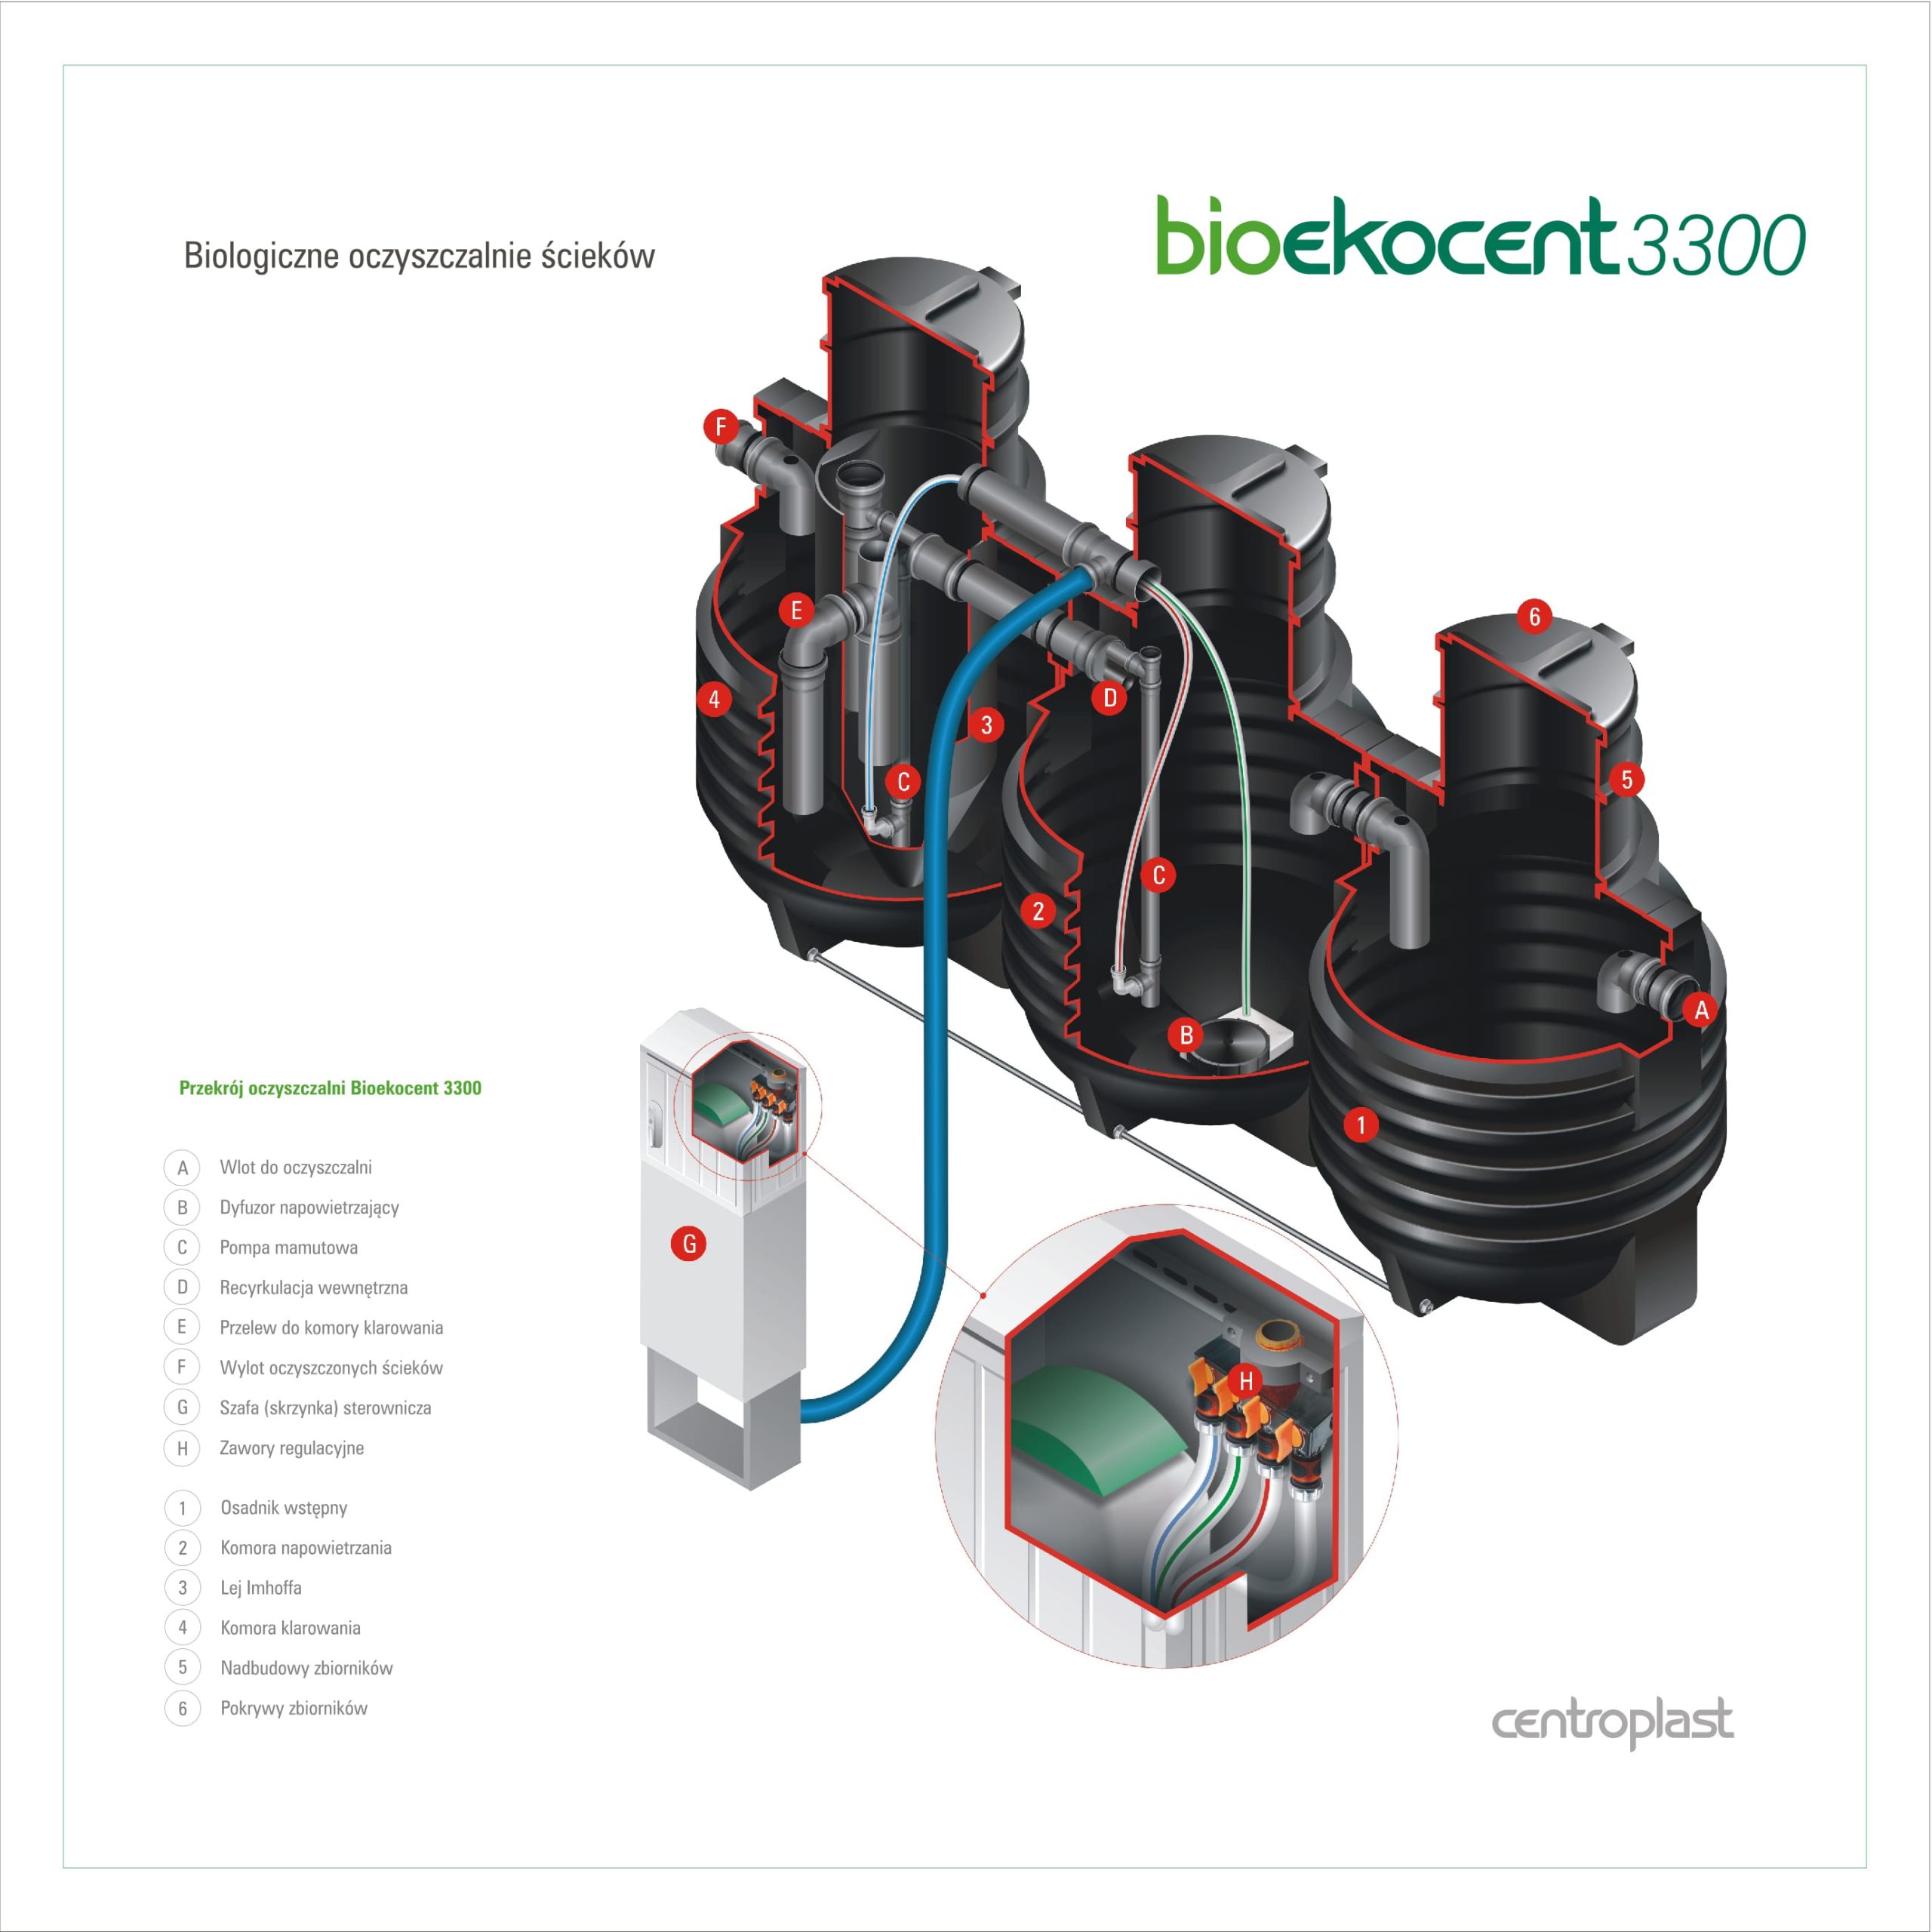 Centroplast Bioekocent 3300 - slajd 1